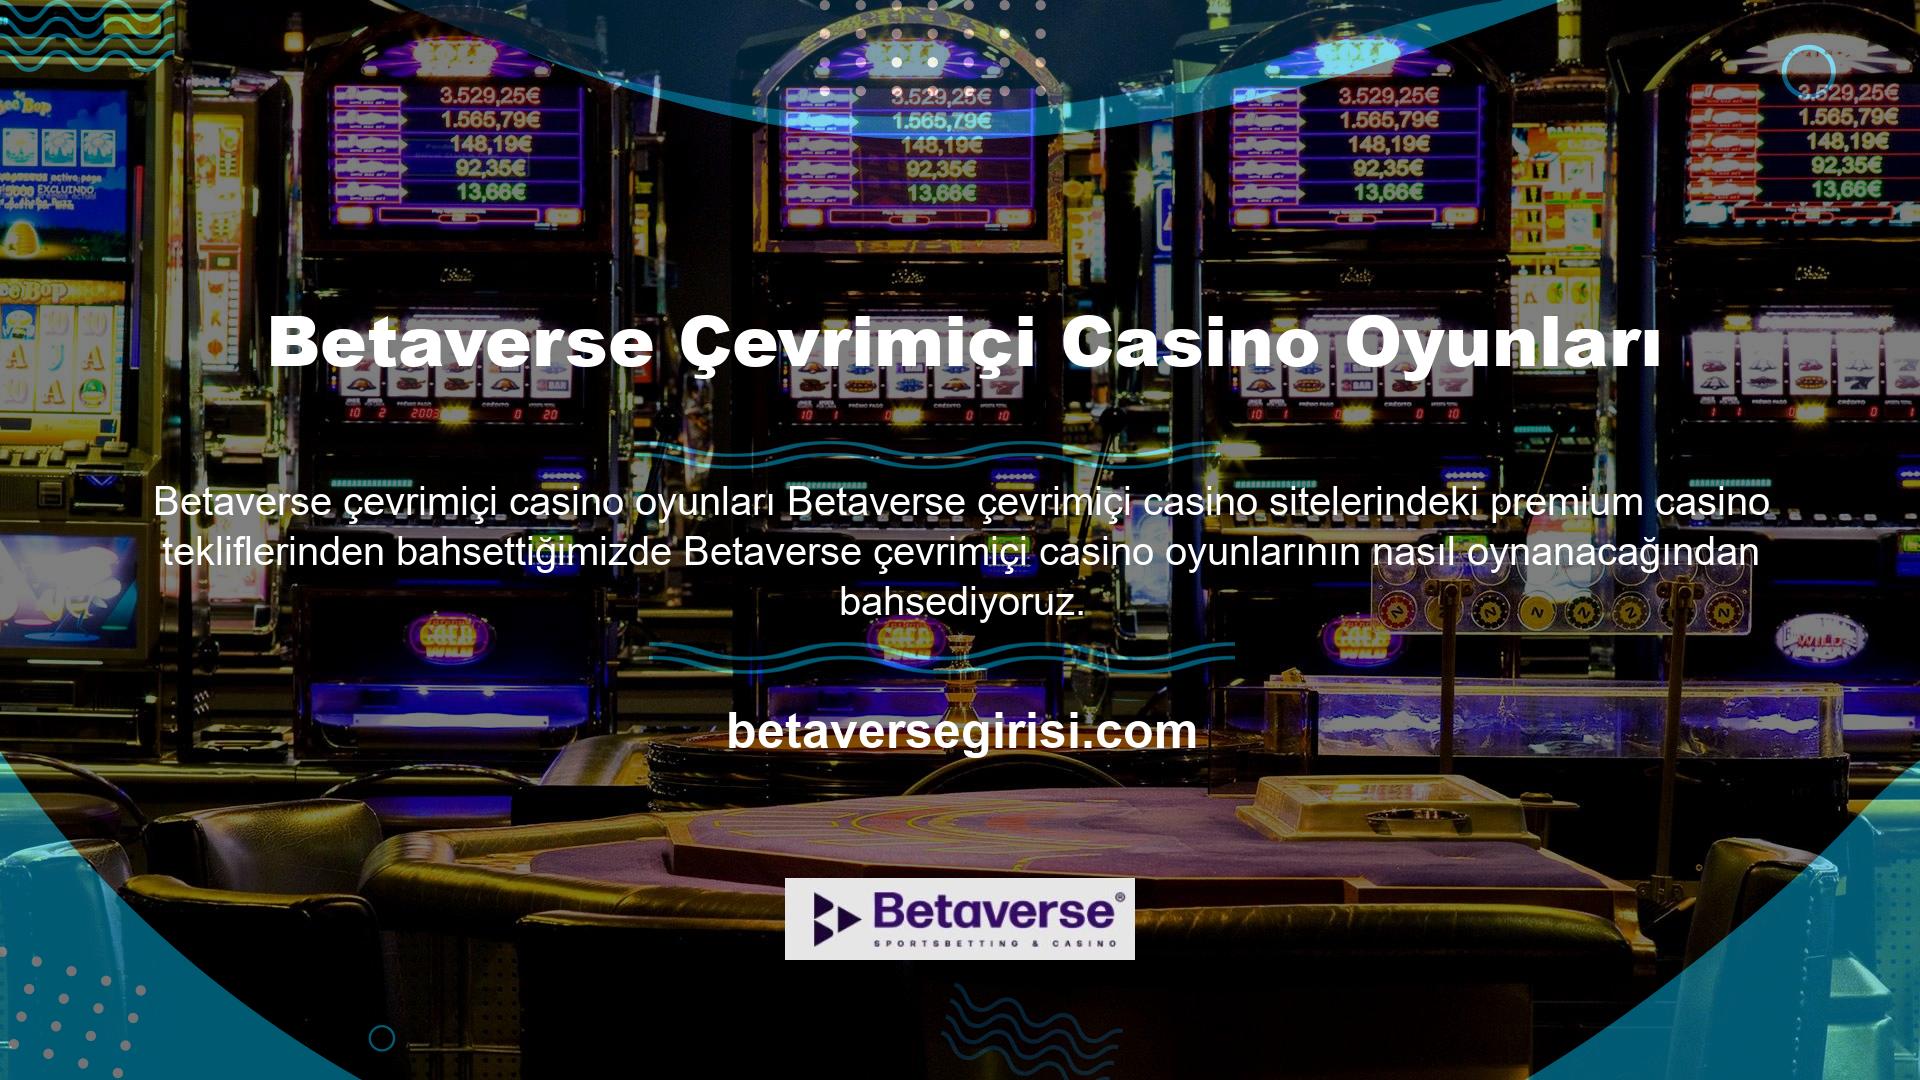 Betaverse çevrimiçi casino sitesinin arayüzü basit ve kullanımı kolaydır